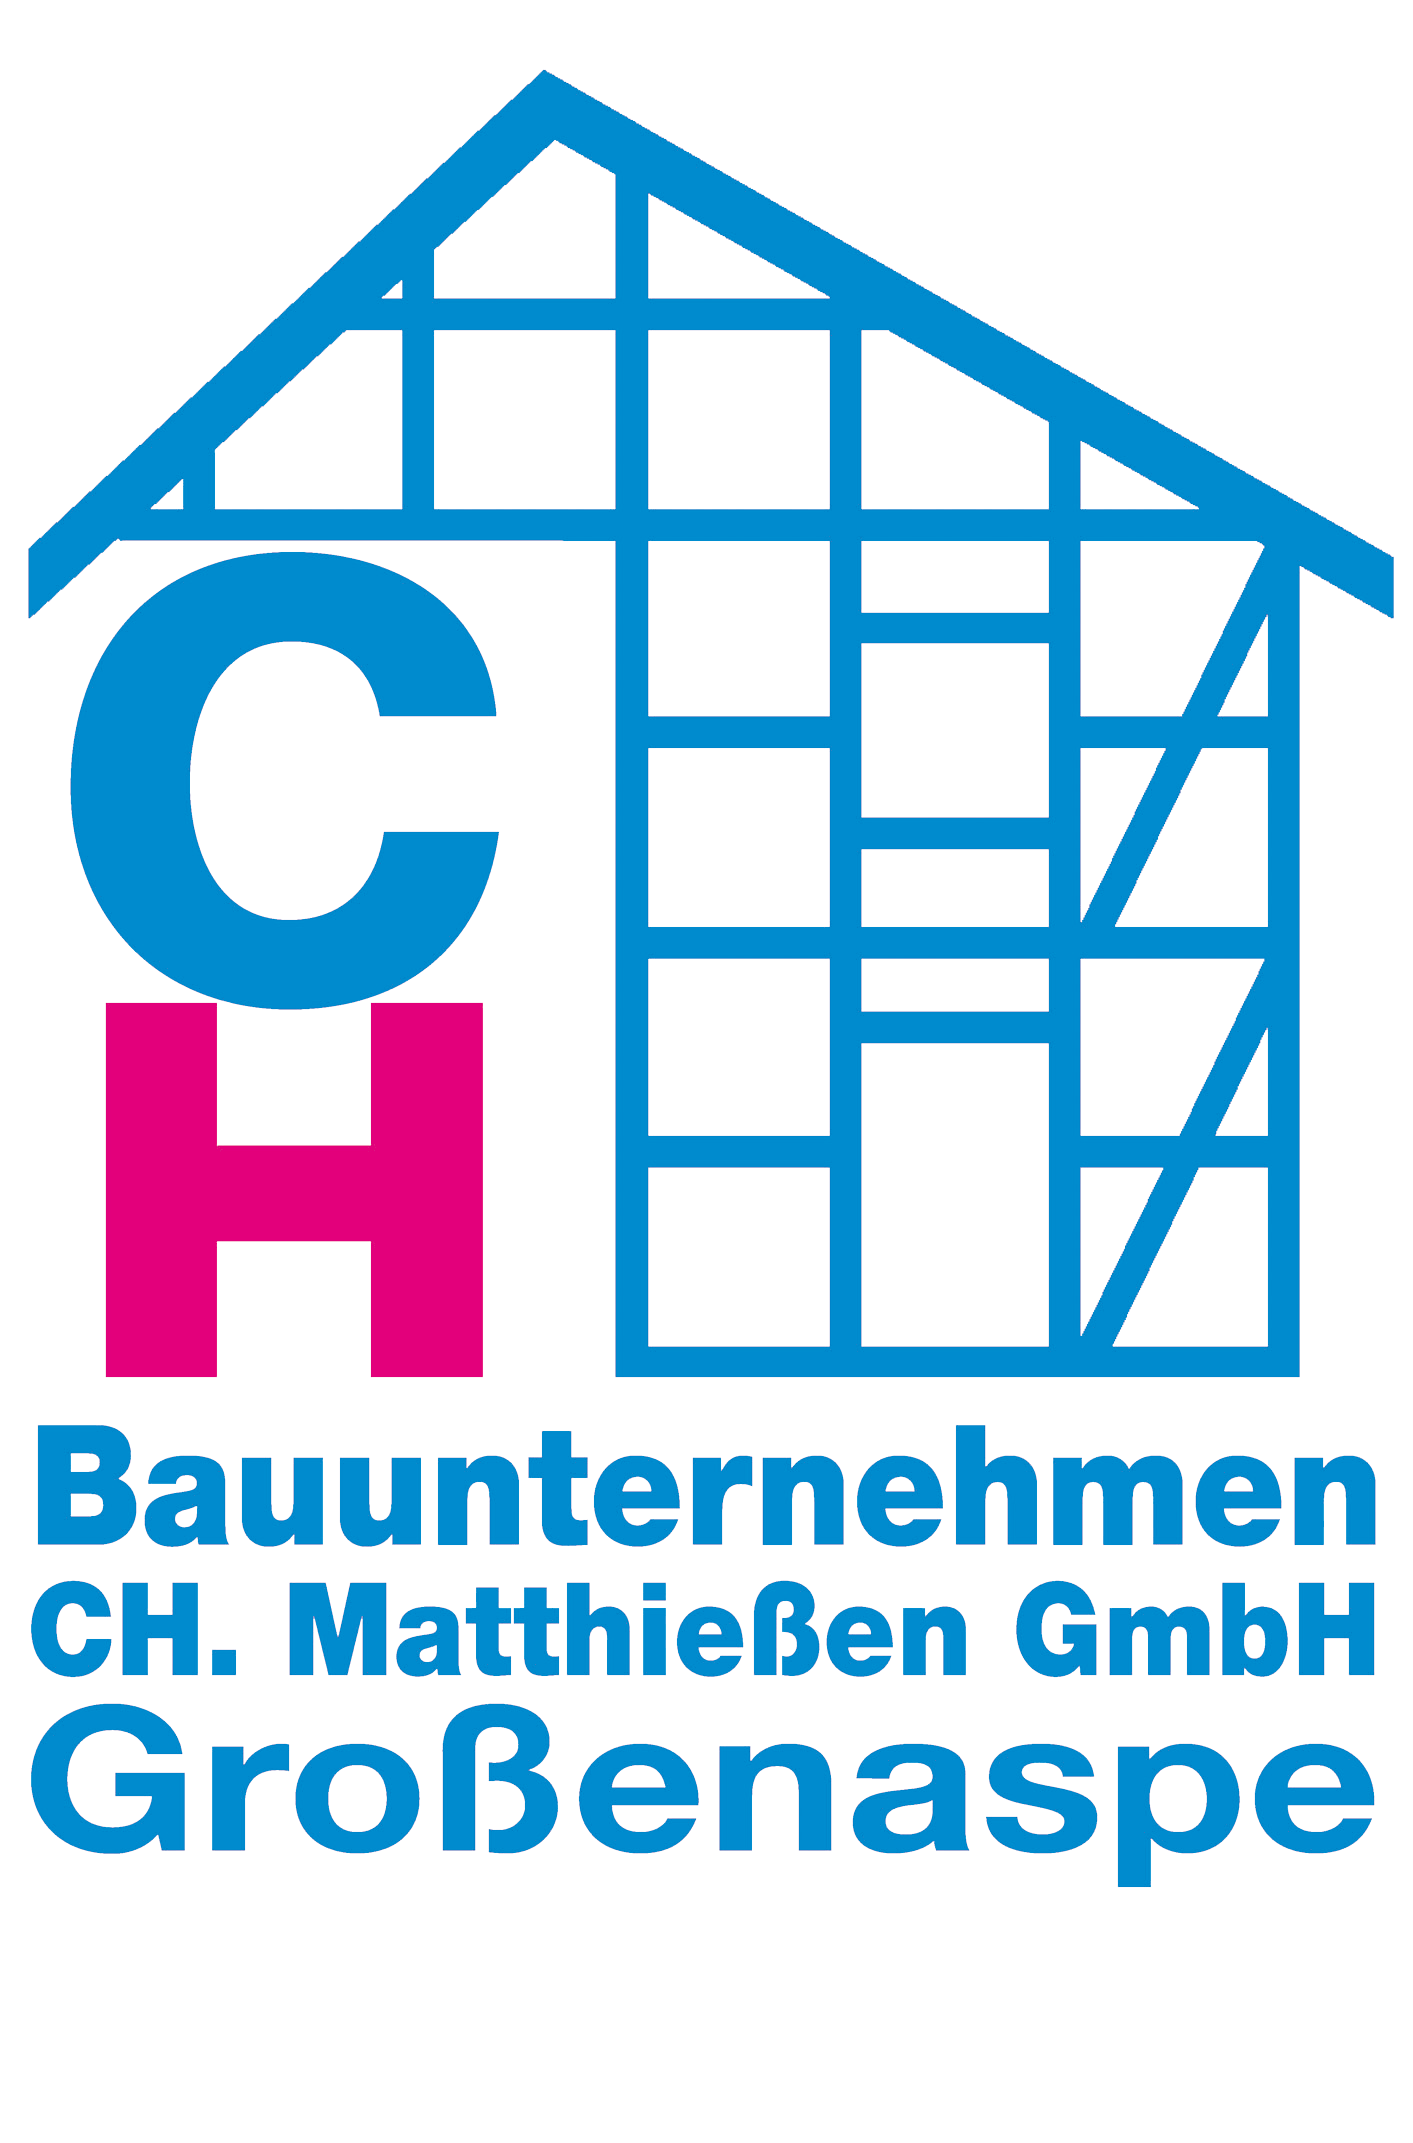 Bauunternehmen CH. Matthießen GmbH